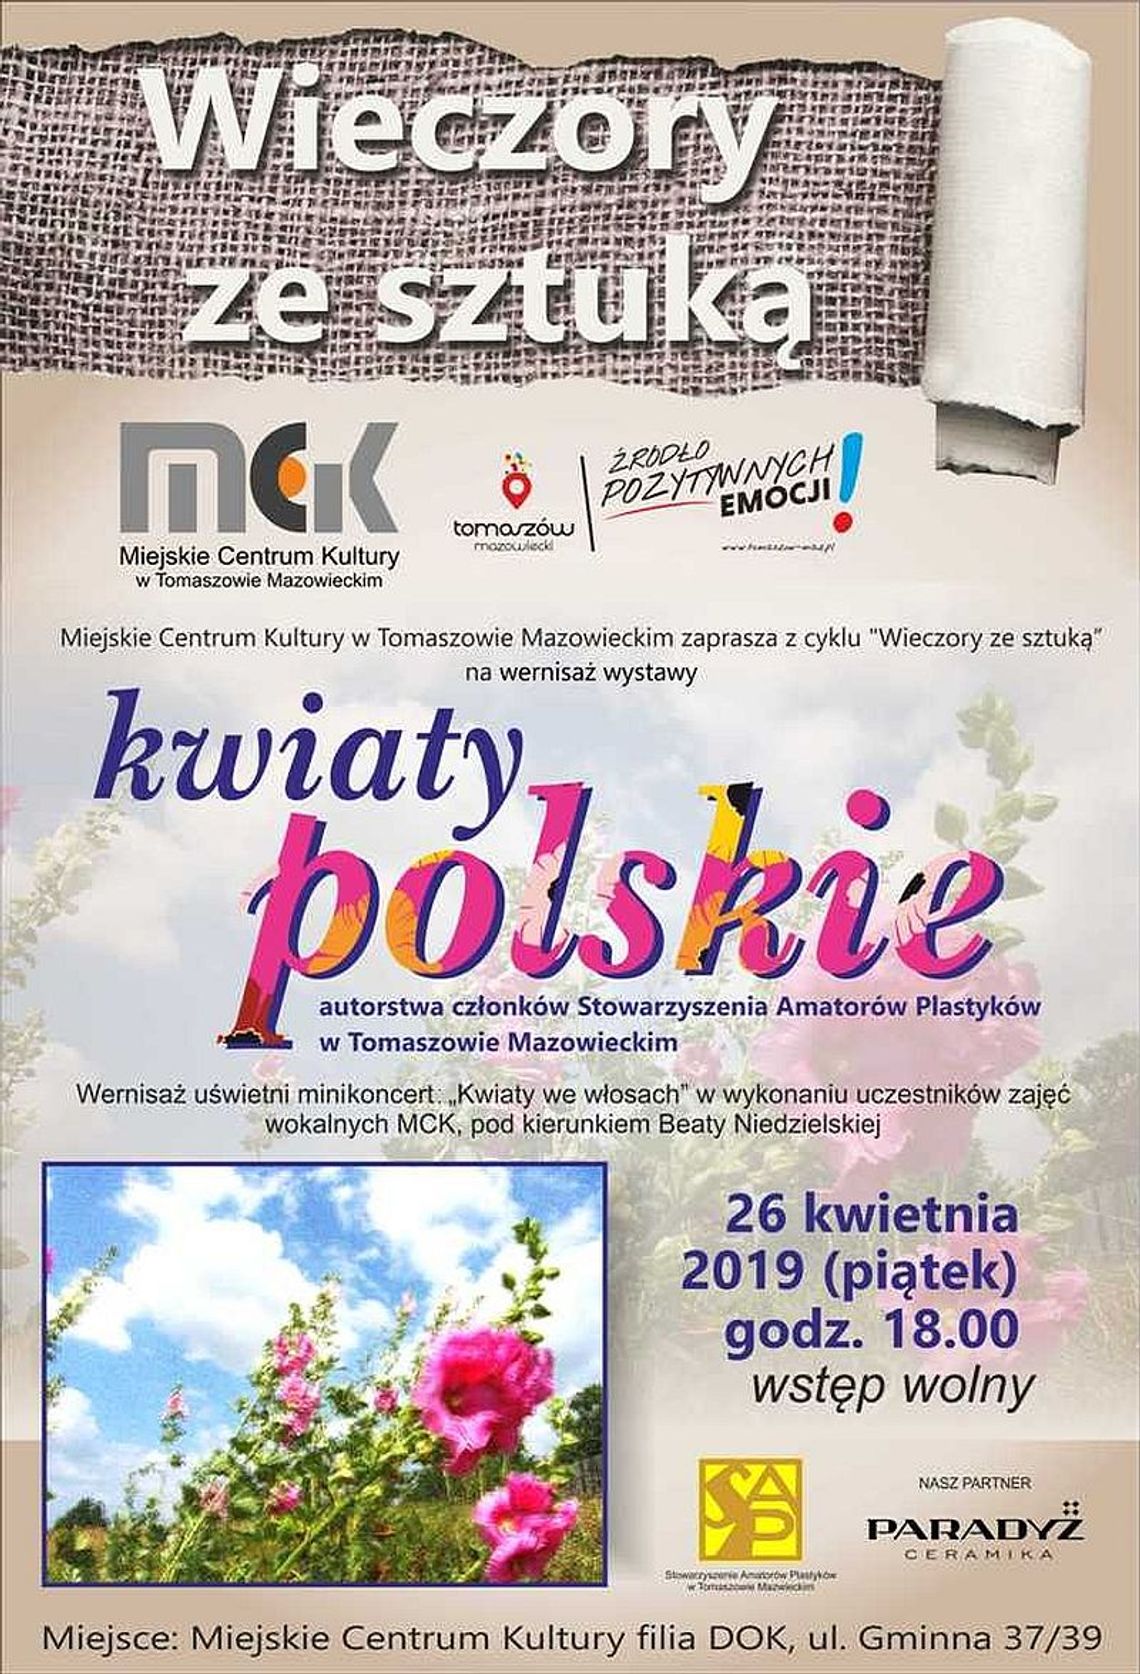 Zaproszenie na wernisaż wystawy "Kwiaty polskie"